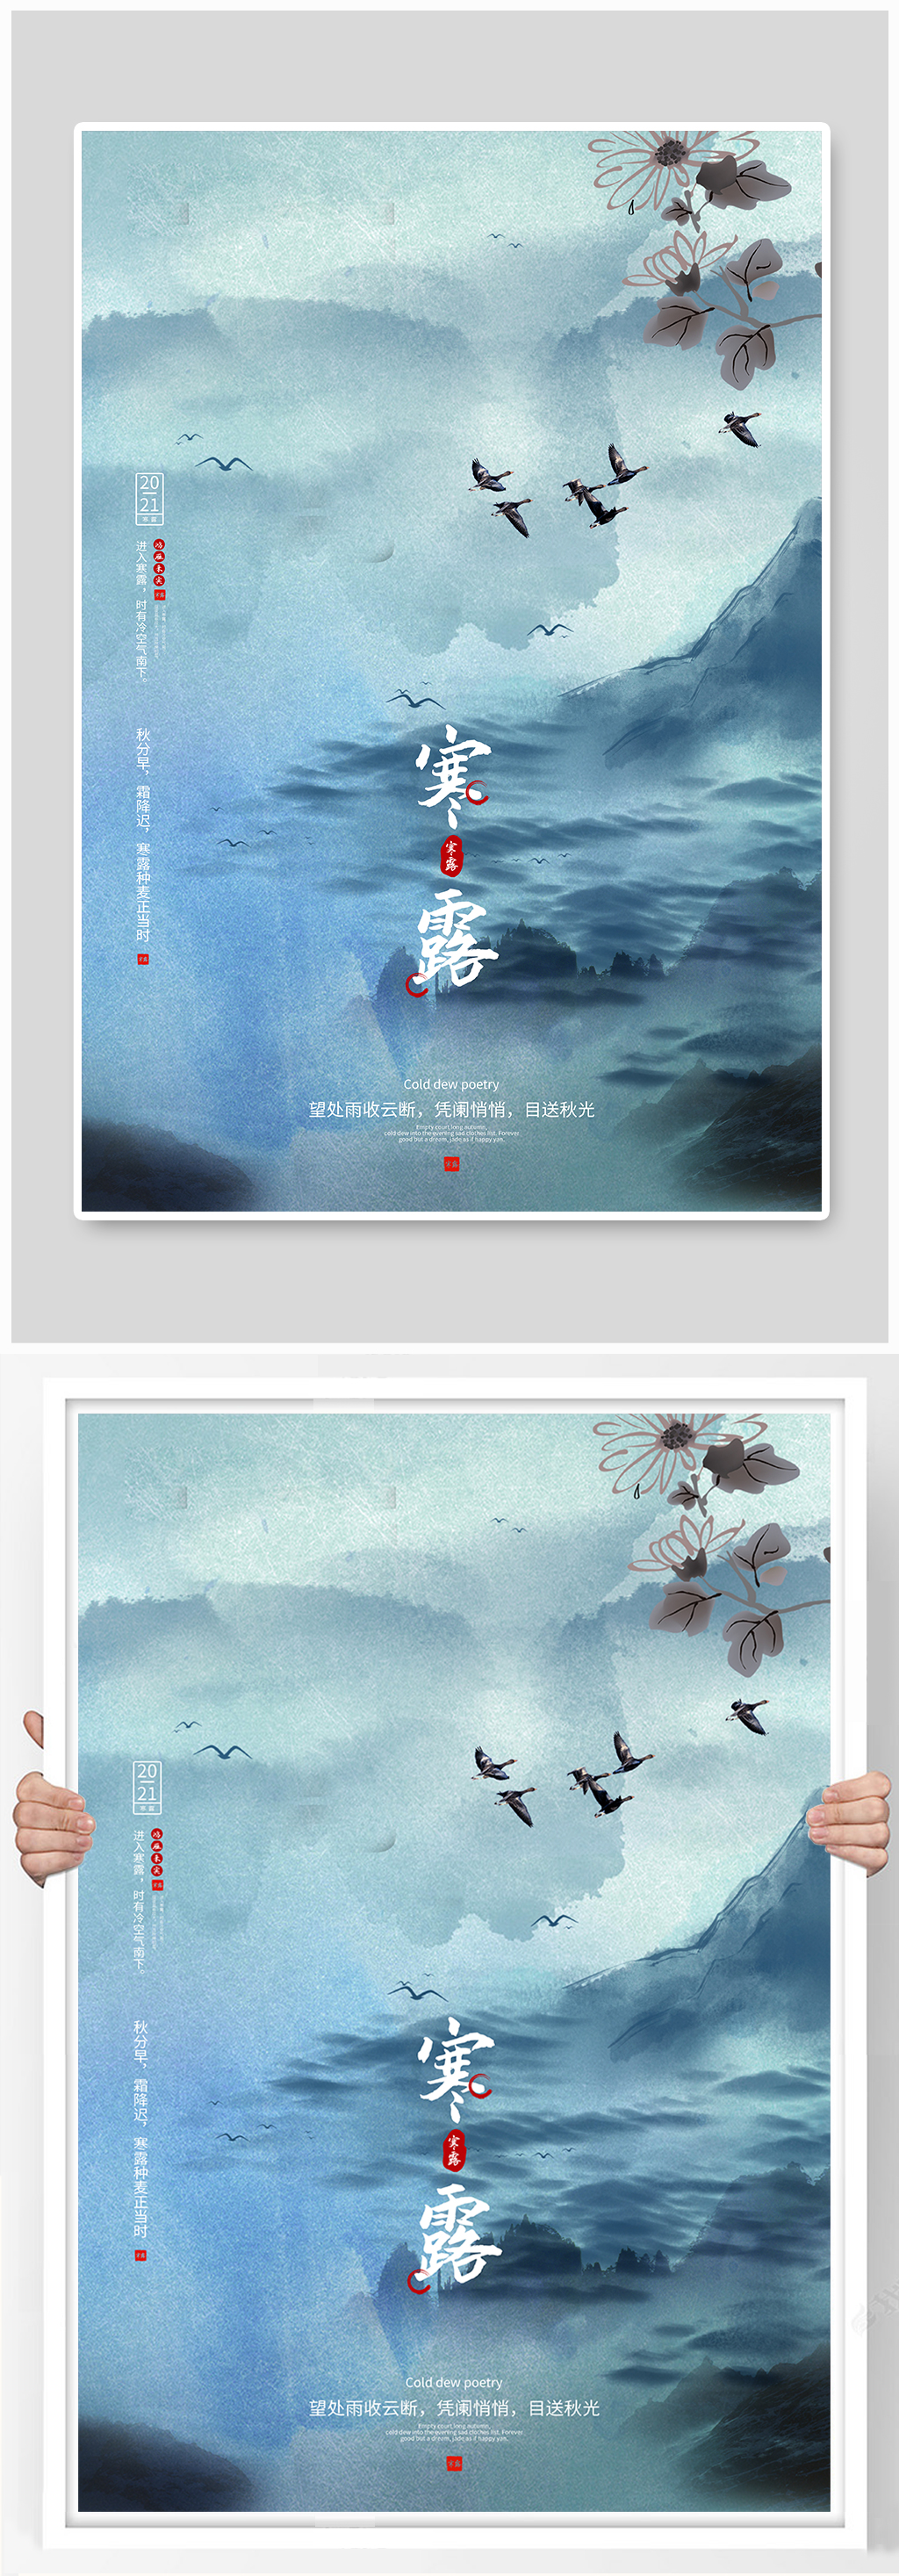 众图网独家提供寒露山雾淡蓝色古风海报素材免费下载,本作品是由